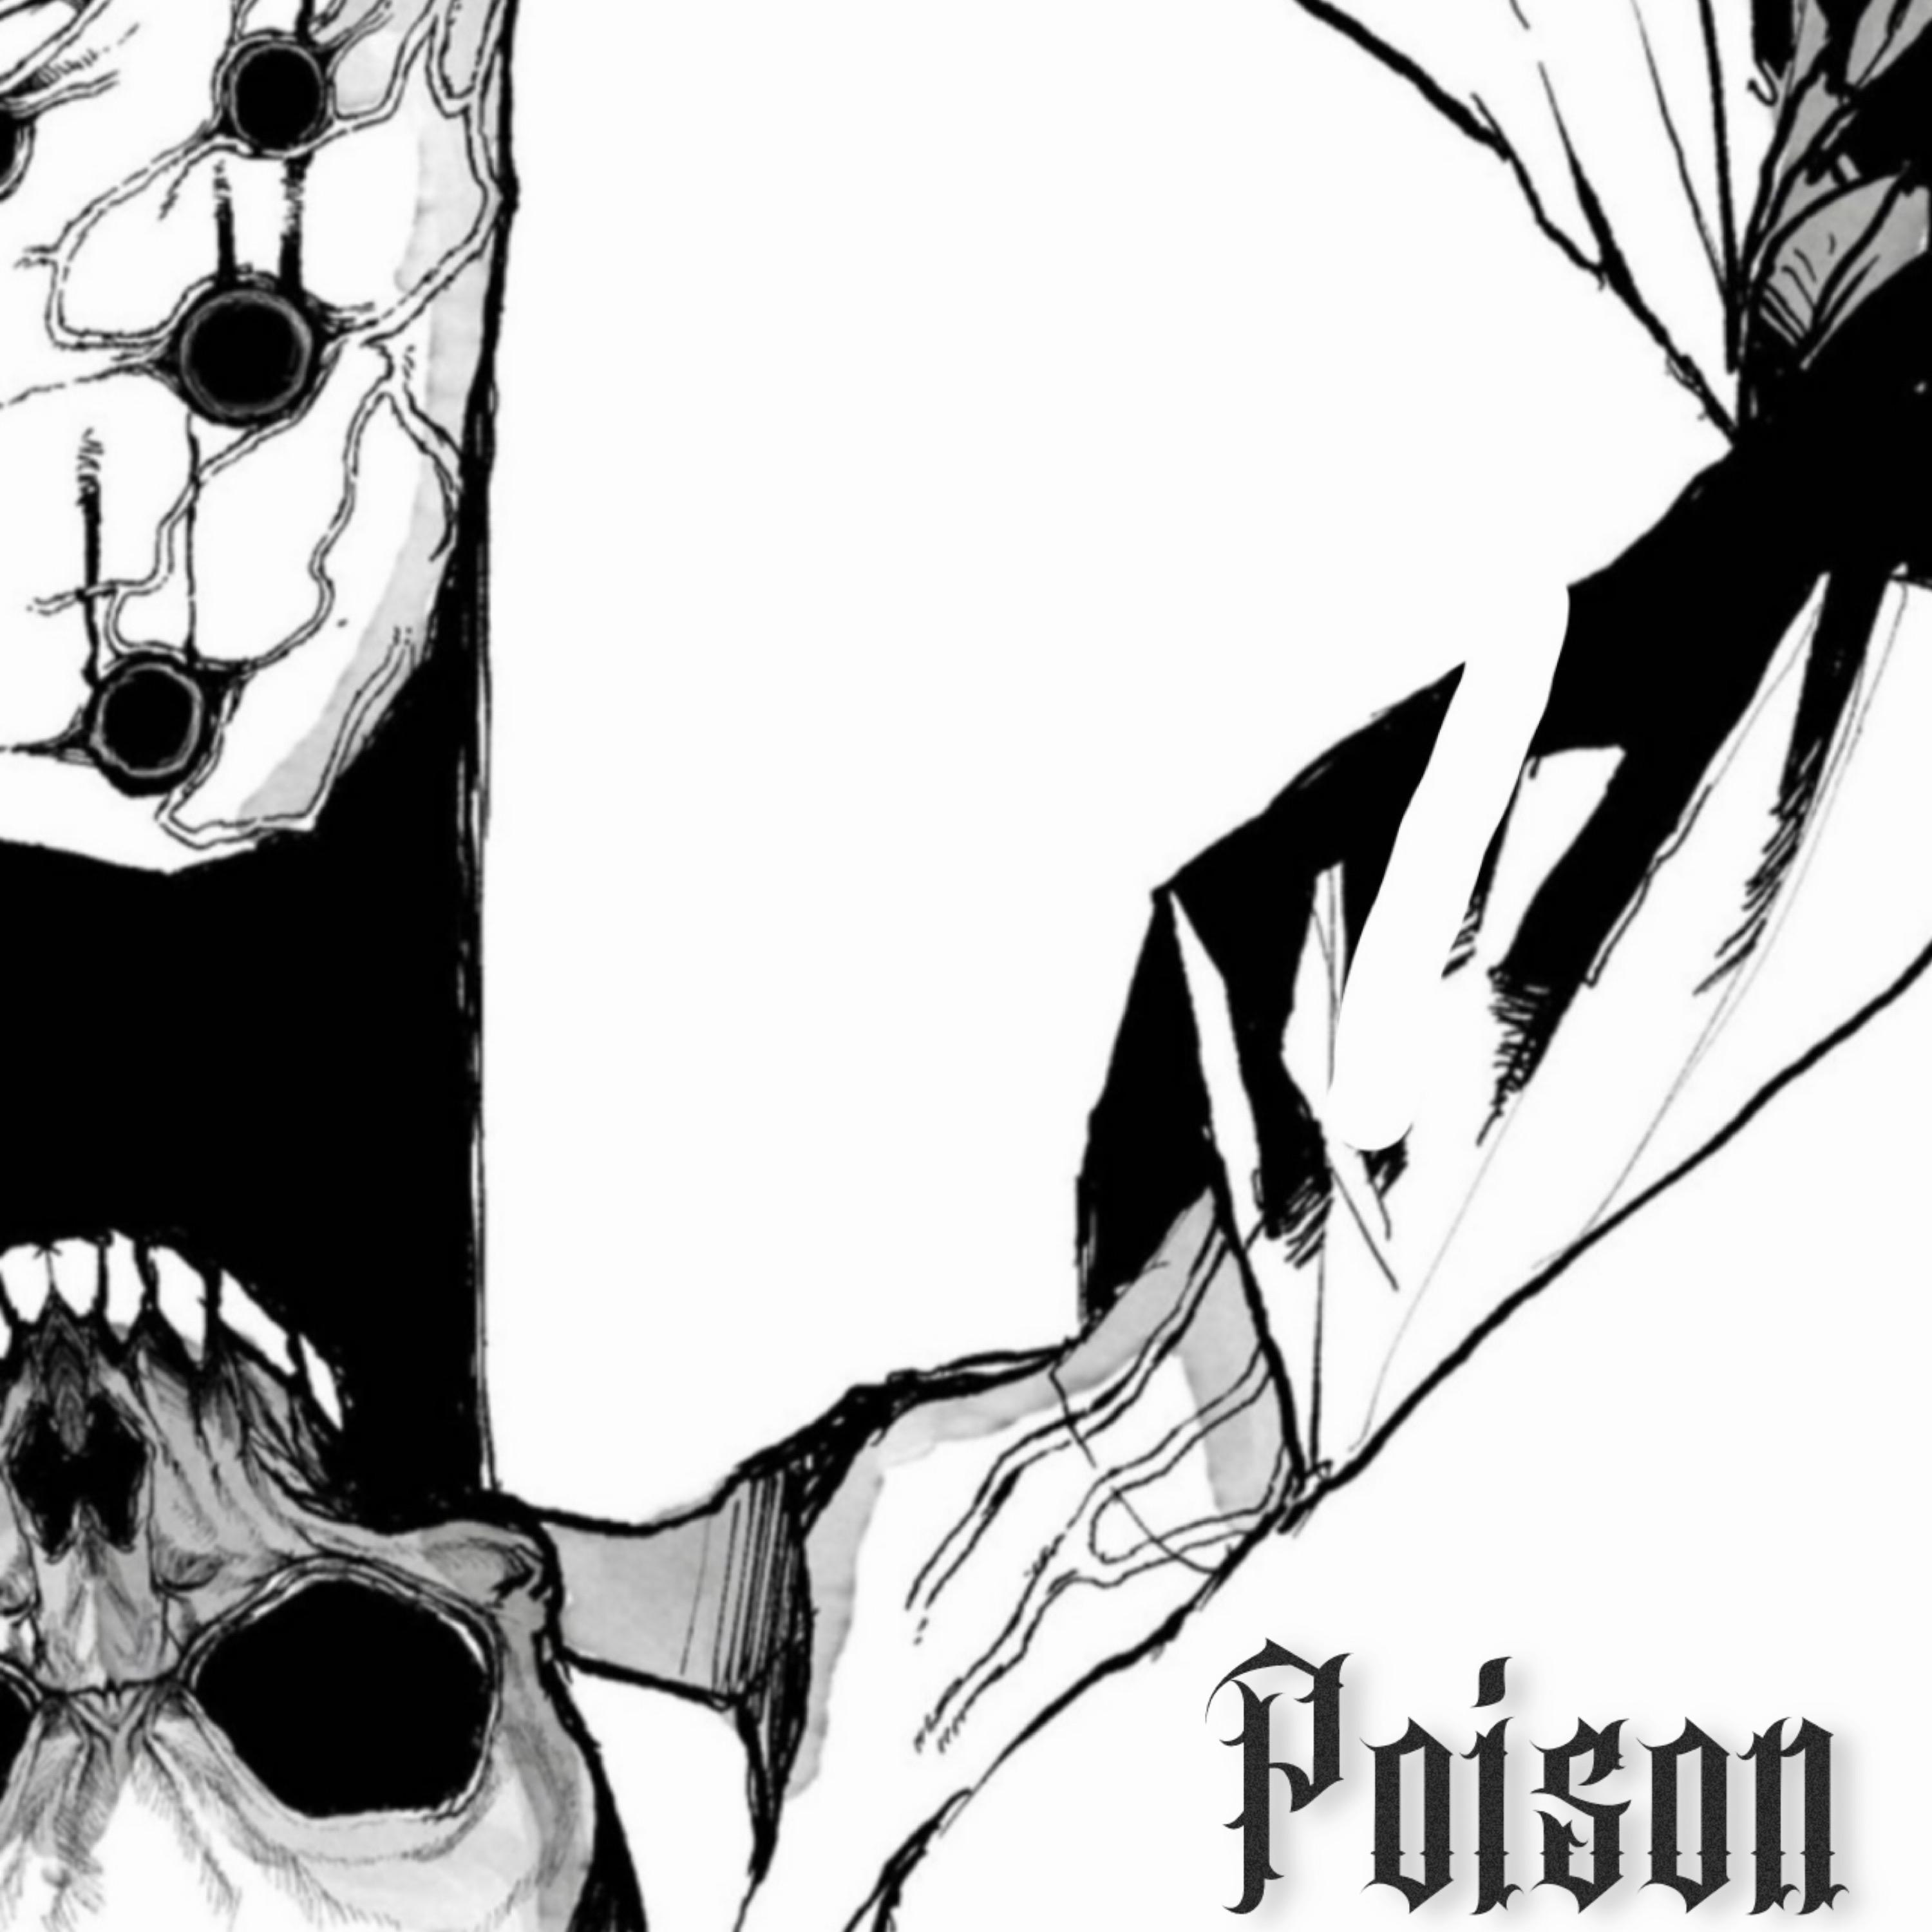 Pr0xy - Poison